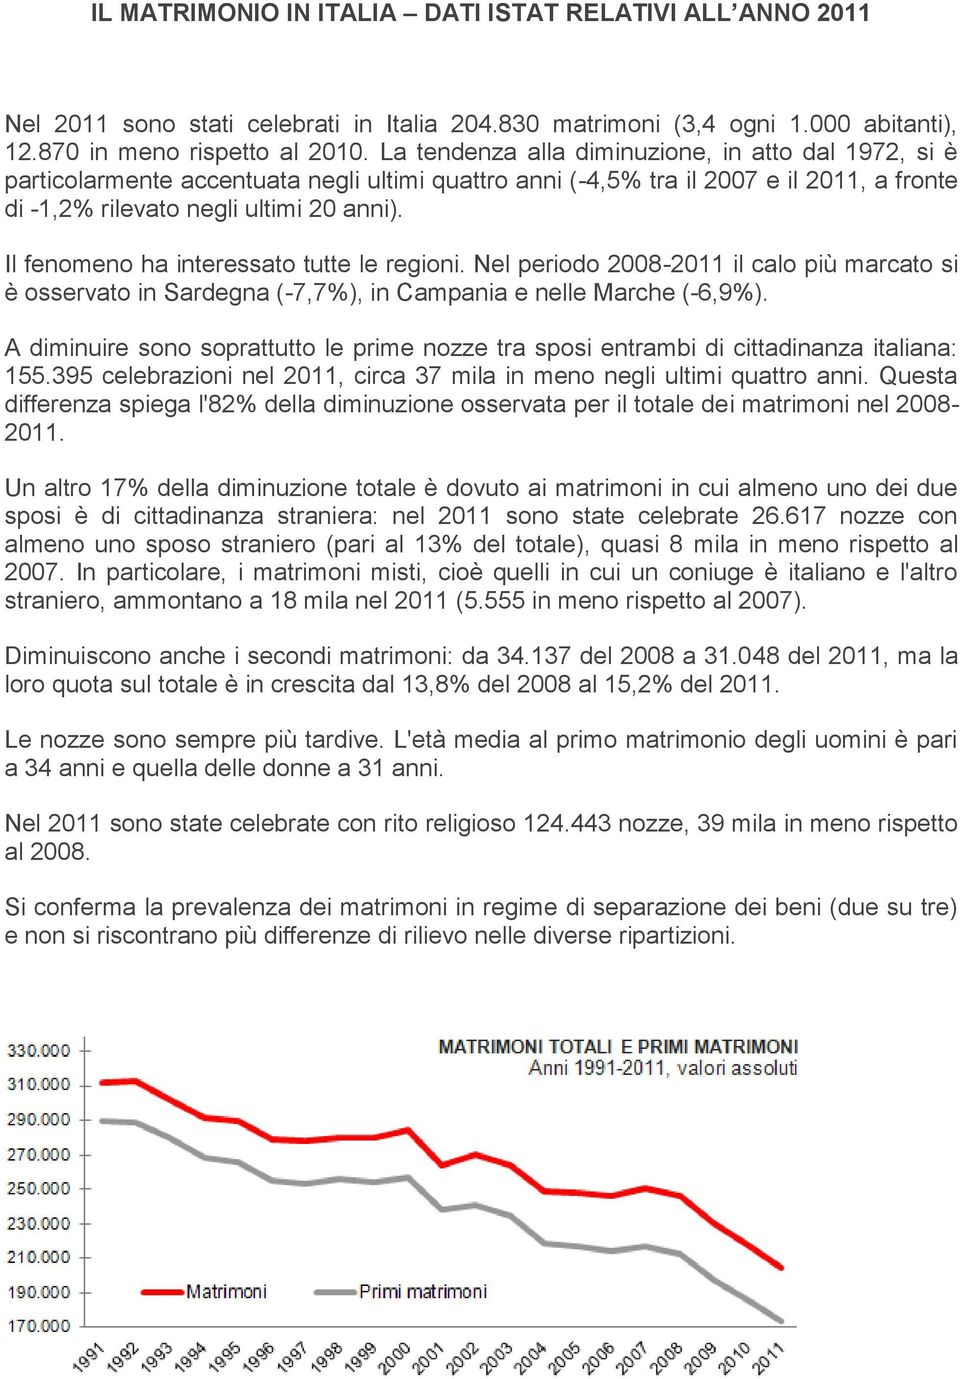 Il fenomeno ha interessato tutte le regioni. Nel periodo 2008-2011 il calo più marcato si è osservato in Sardegna (-7,7%), in Campania e nelle Marche (-6,9%).